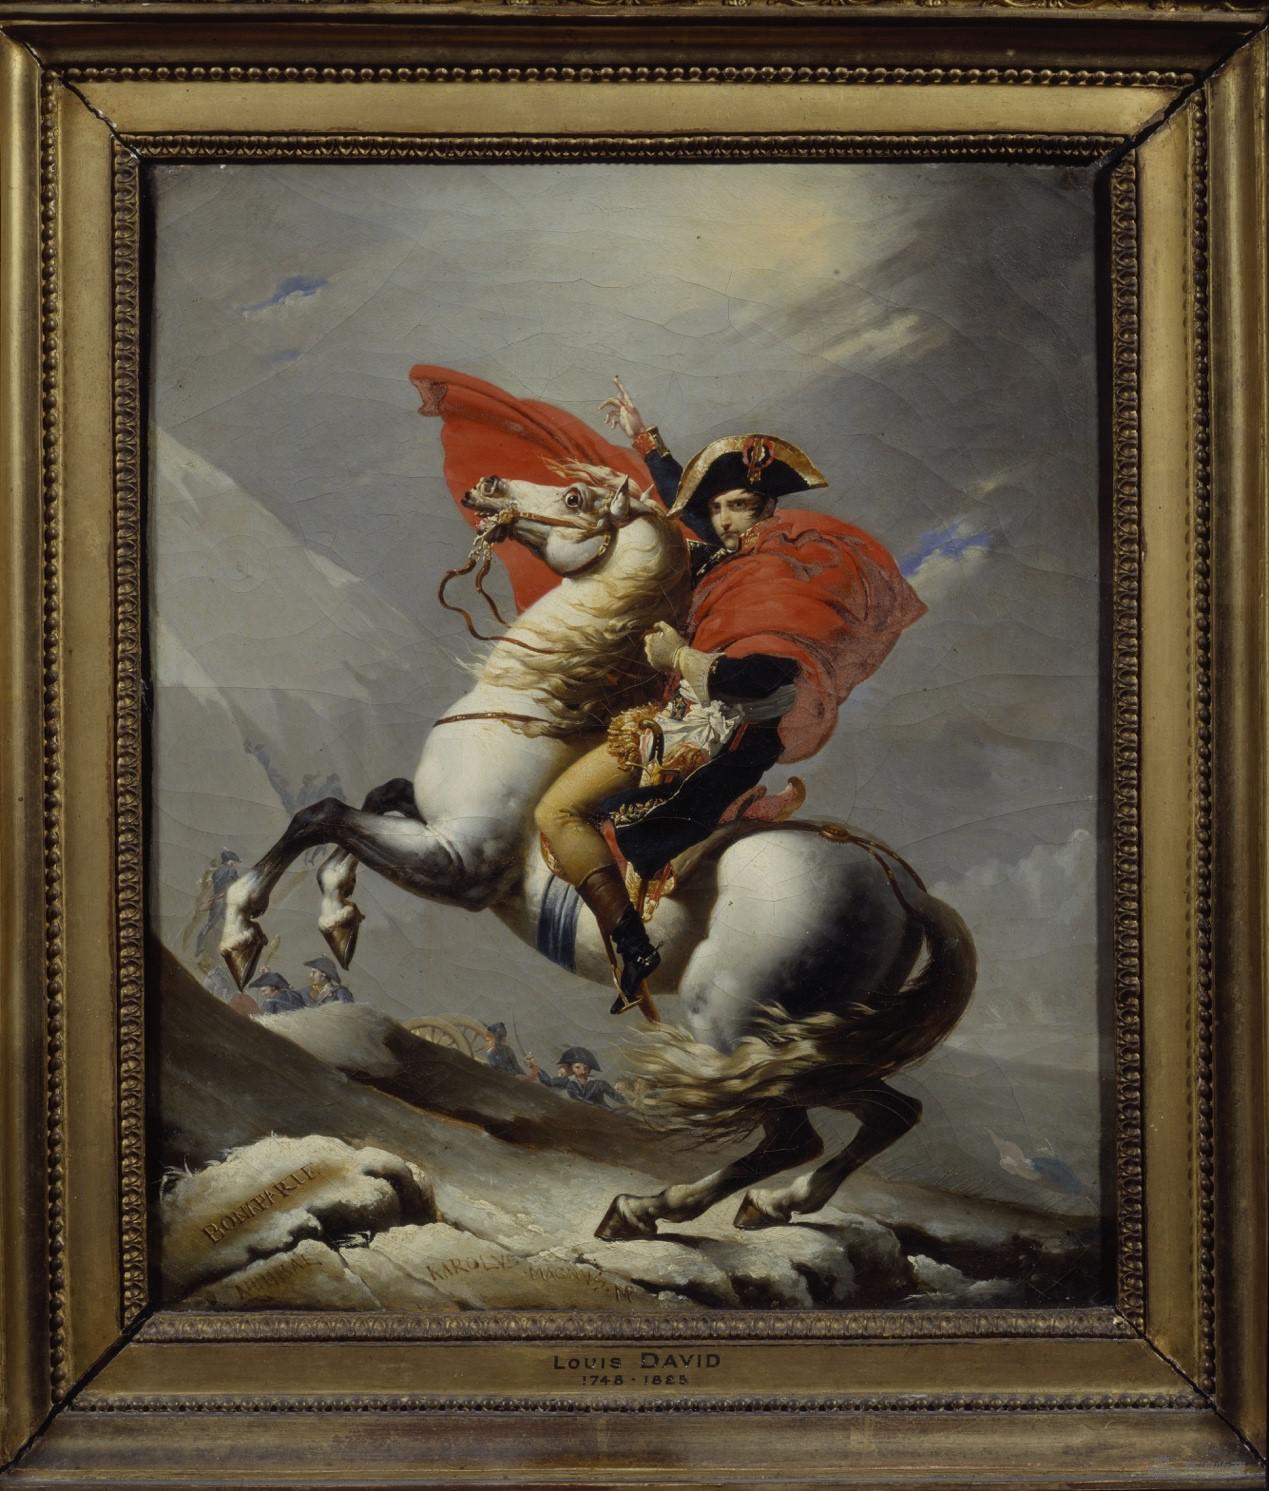 拿破仑图片 骑马高清图片